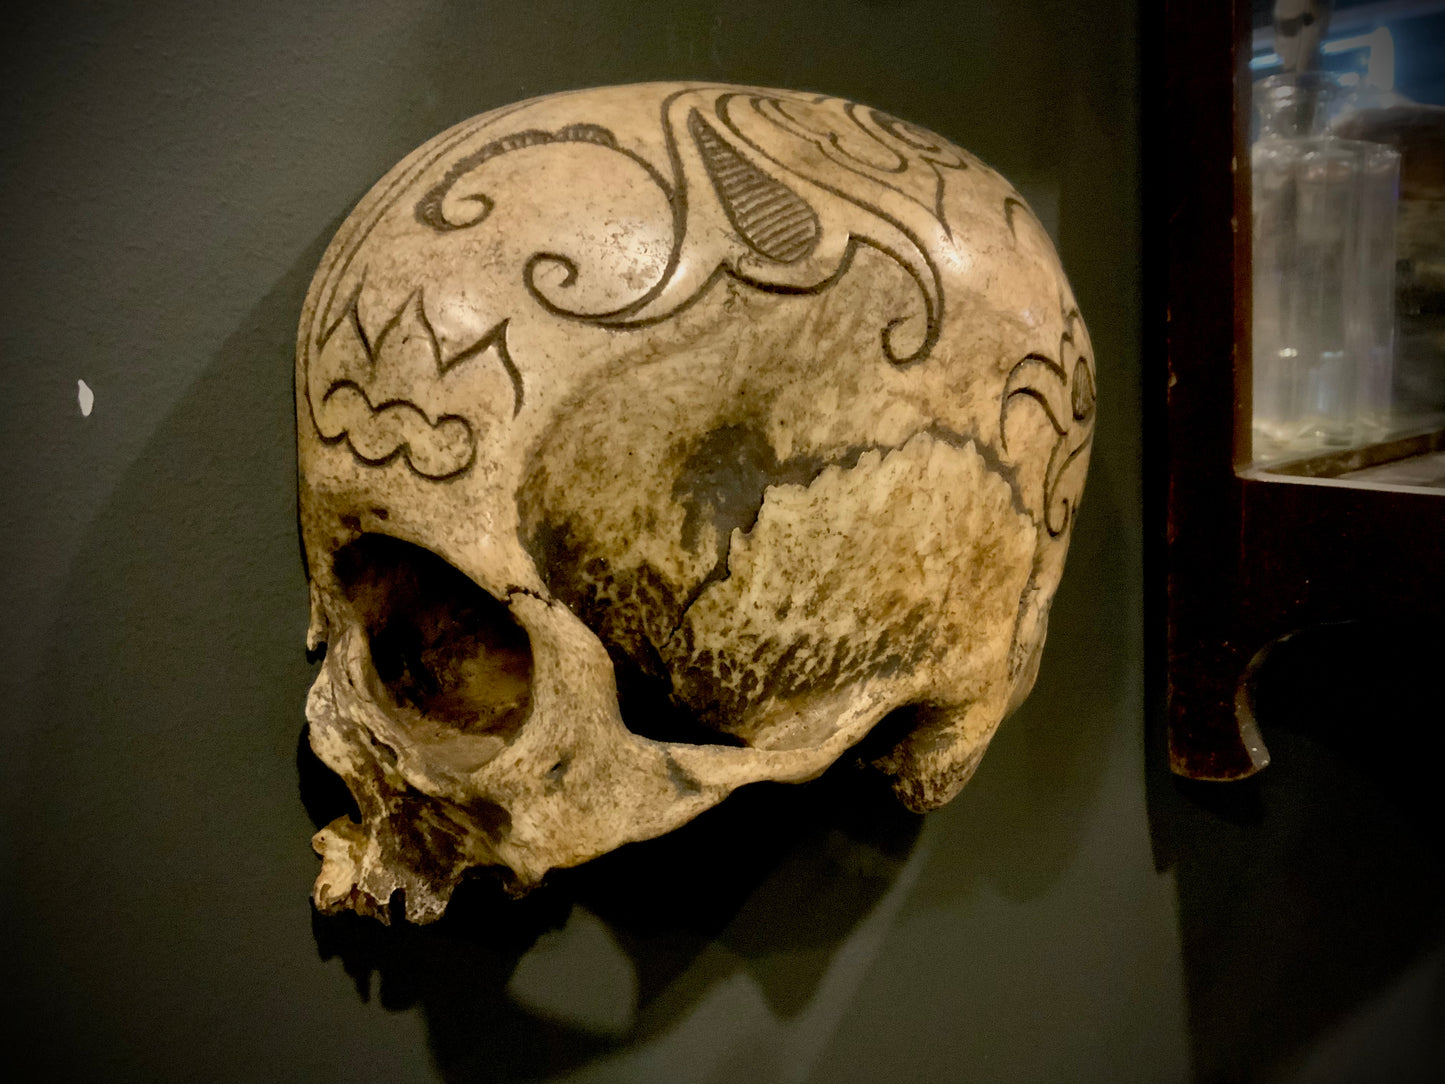 Real dayak human skull